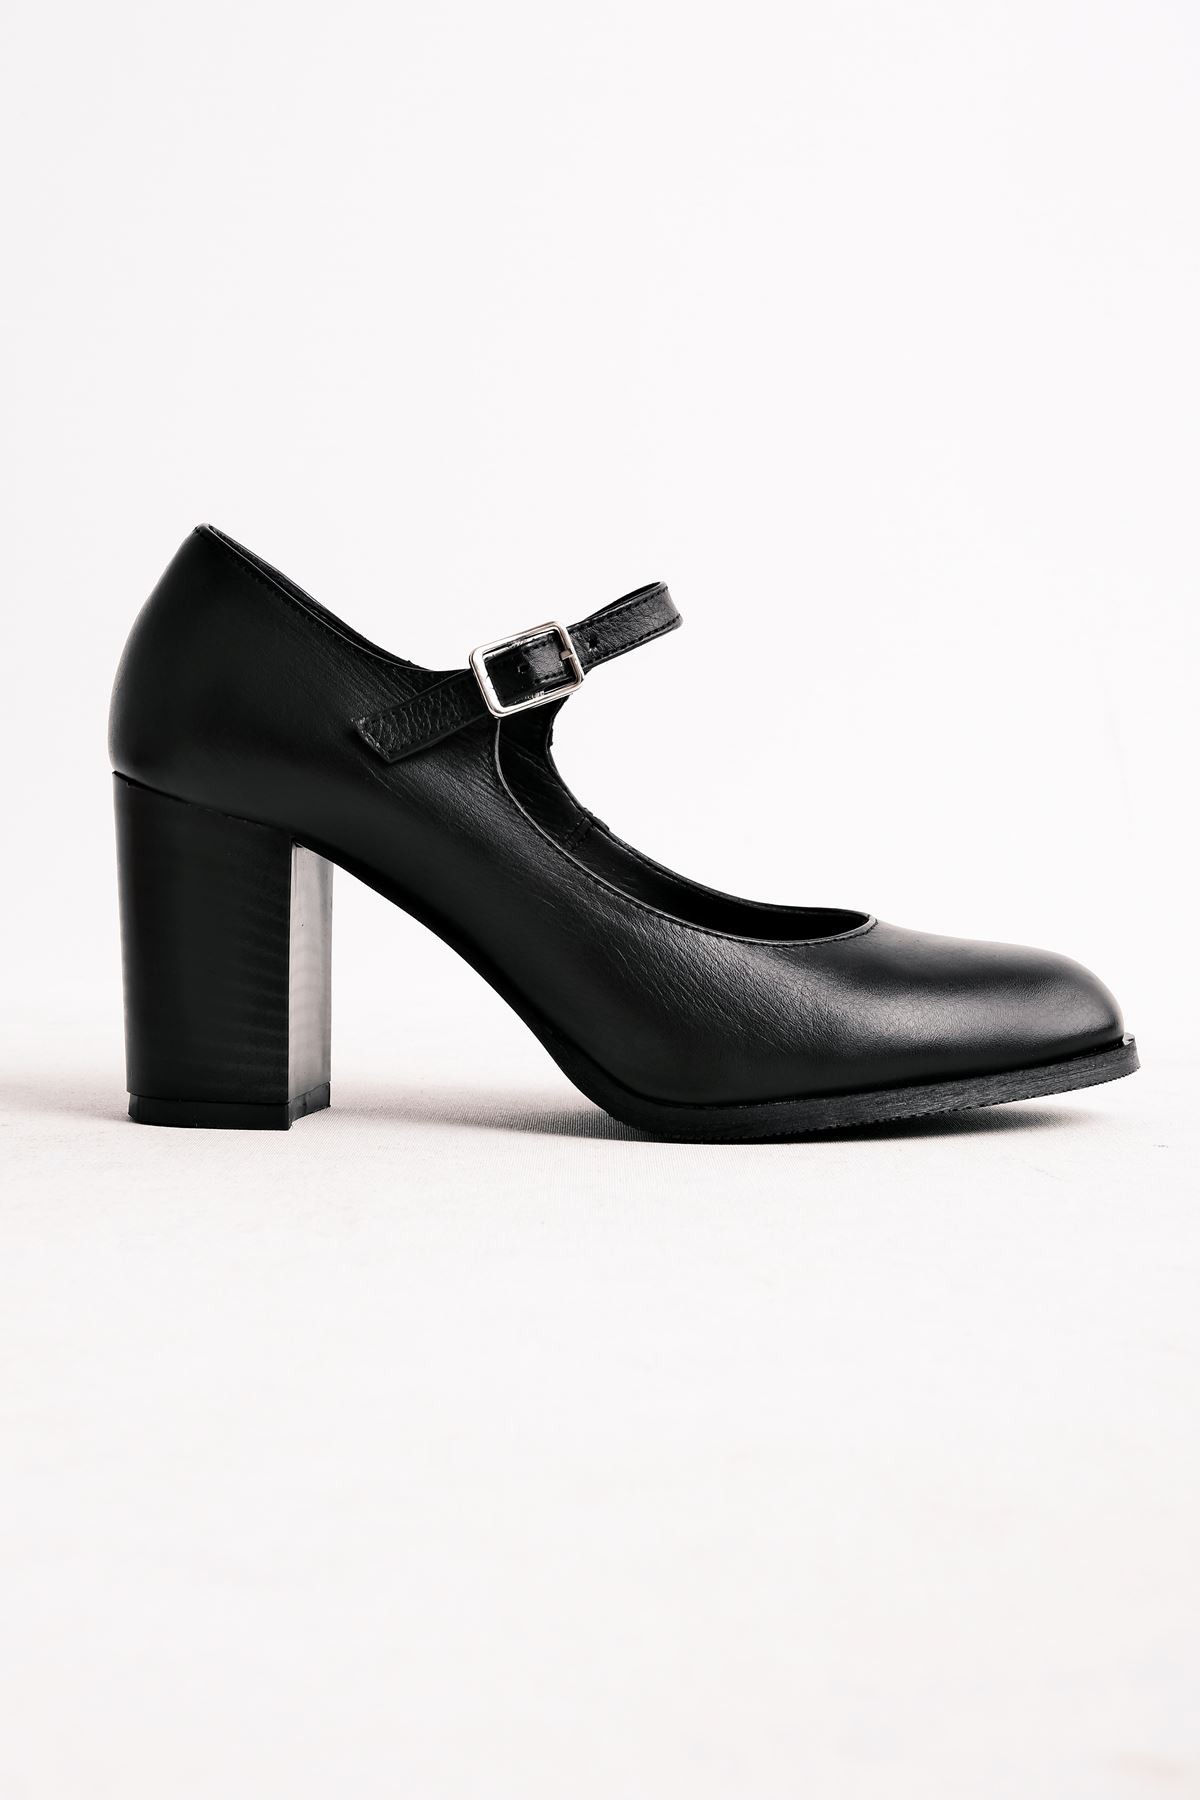 Sharoy Balerin Kadın Hakiki Deri Topuklu Ayakkabı- B2775 - Siyah